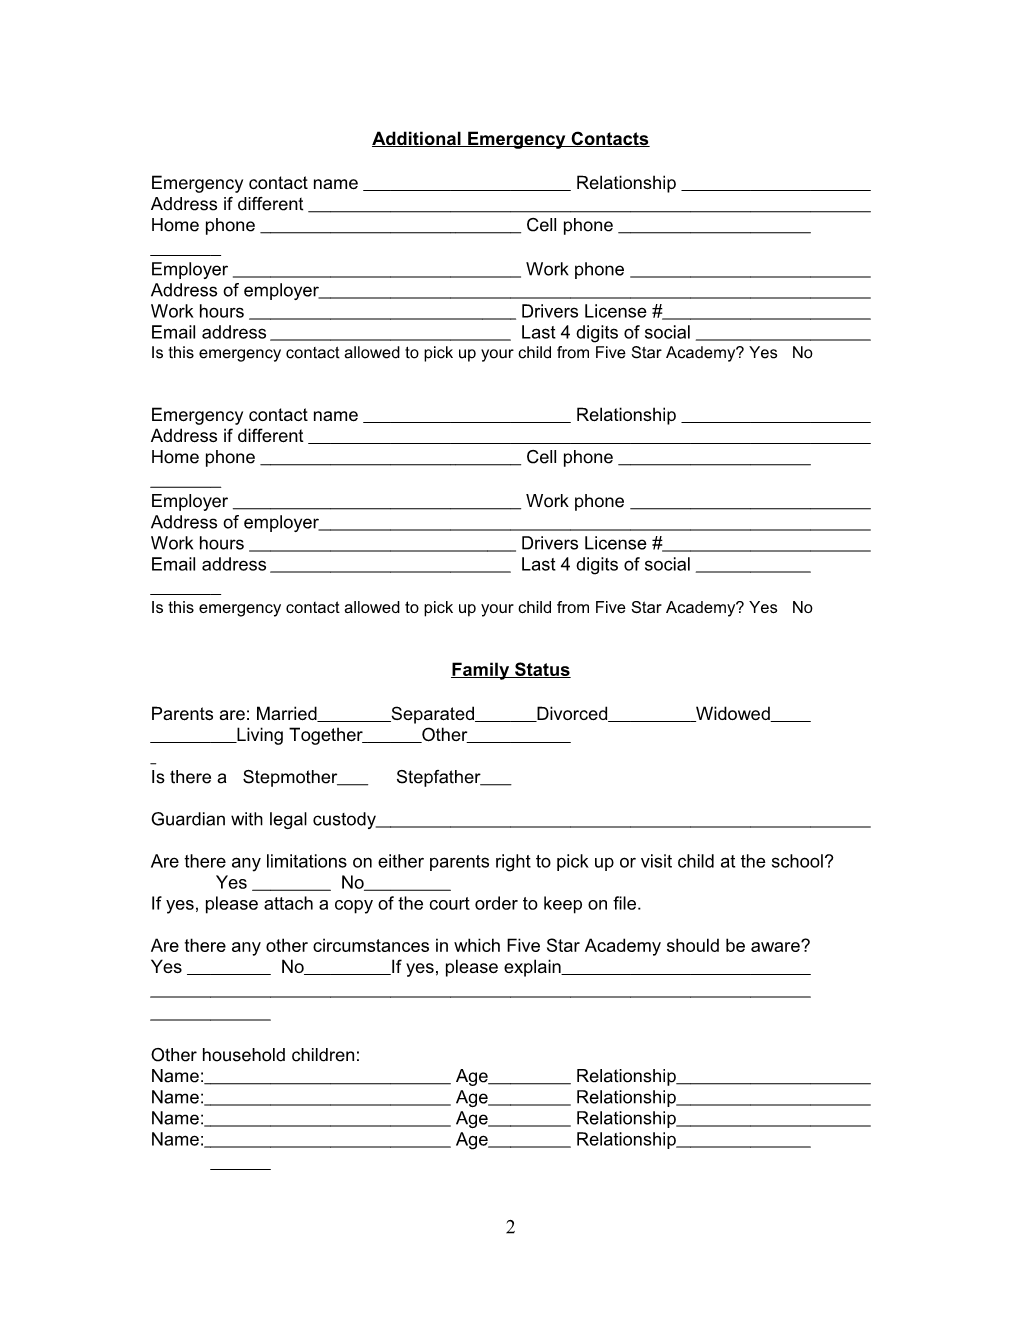 Child Registration Form